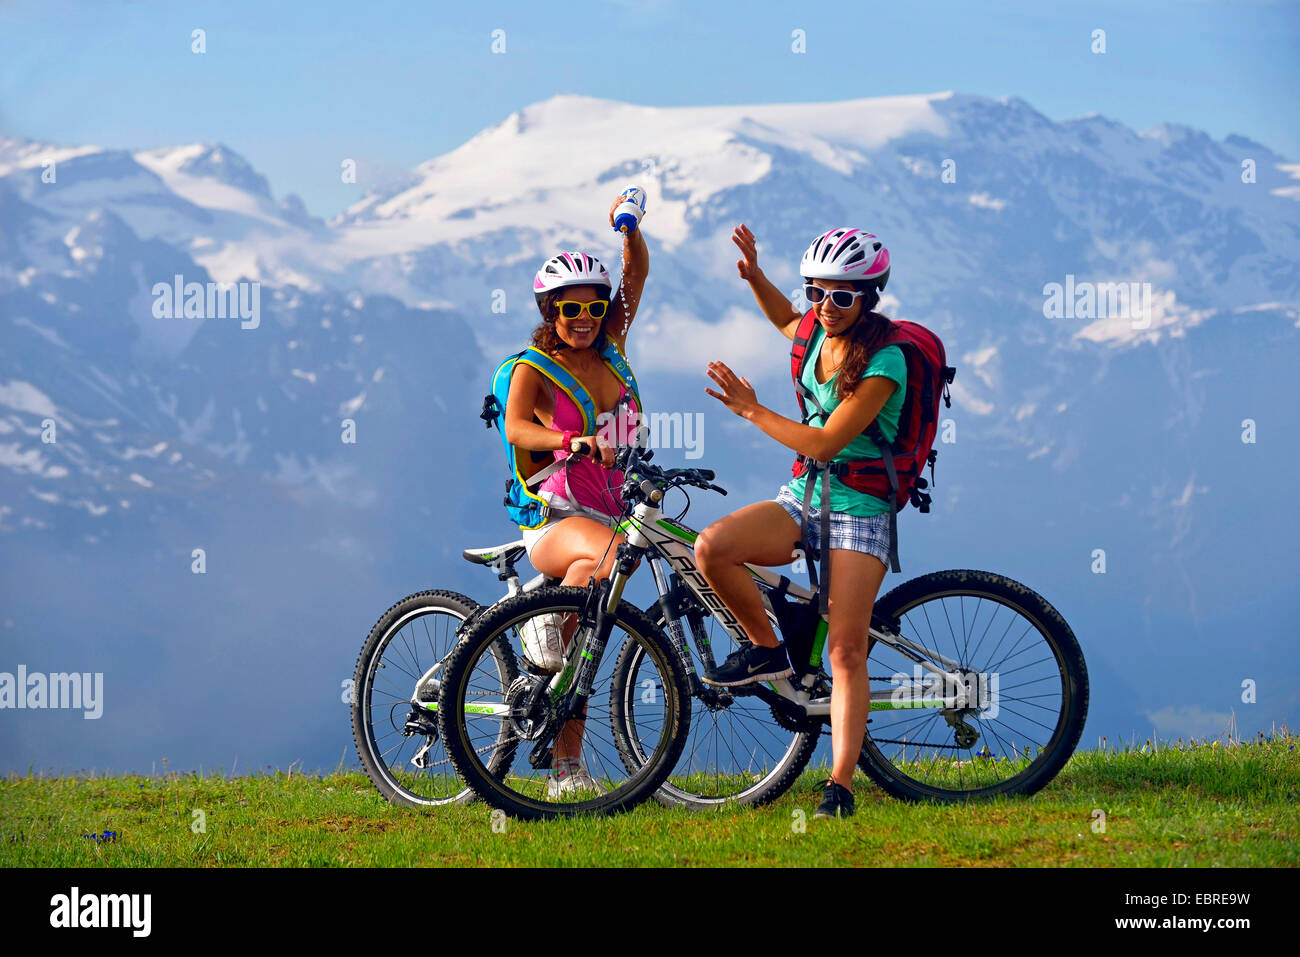 zwei weibliche Mountainbiker vor Bergkulisse, Champagny, Nationalparks Vanoise, Savoie, Frankreich Stockfoto